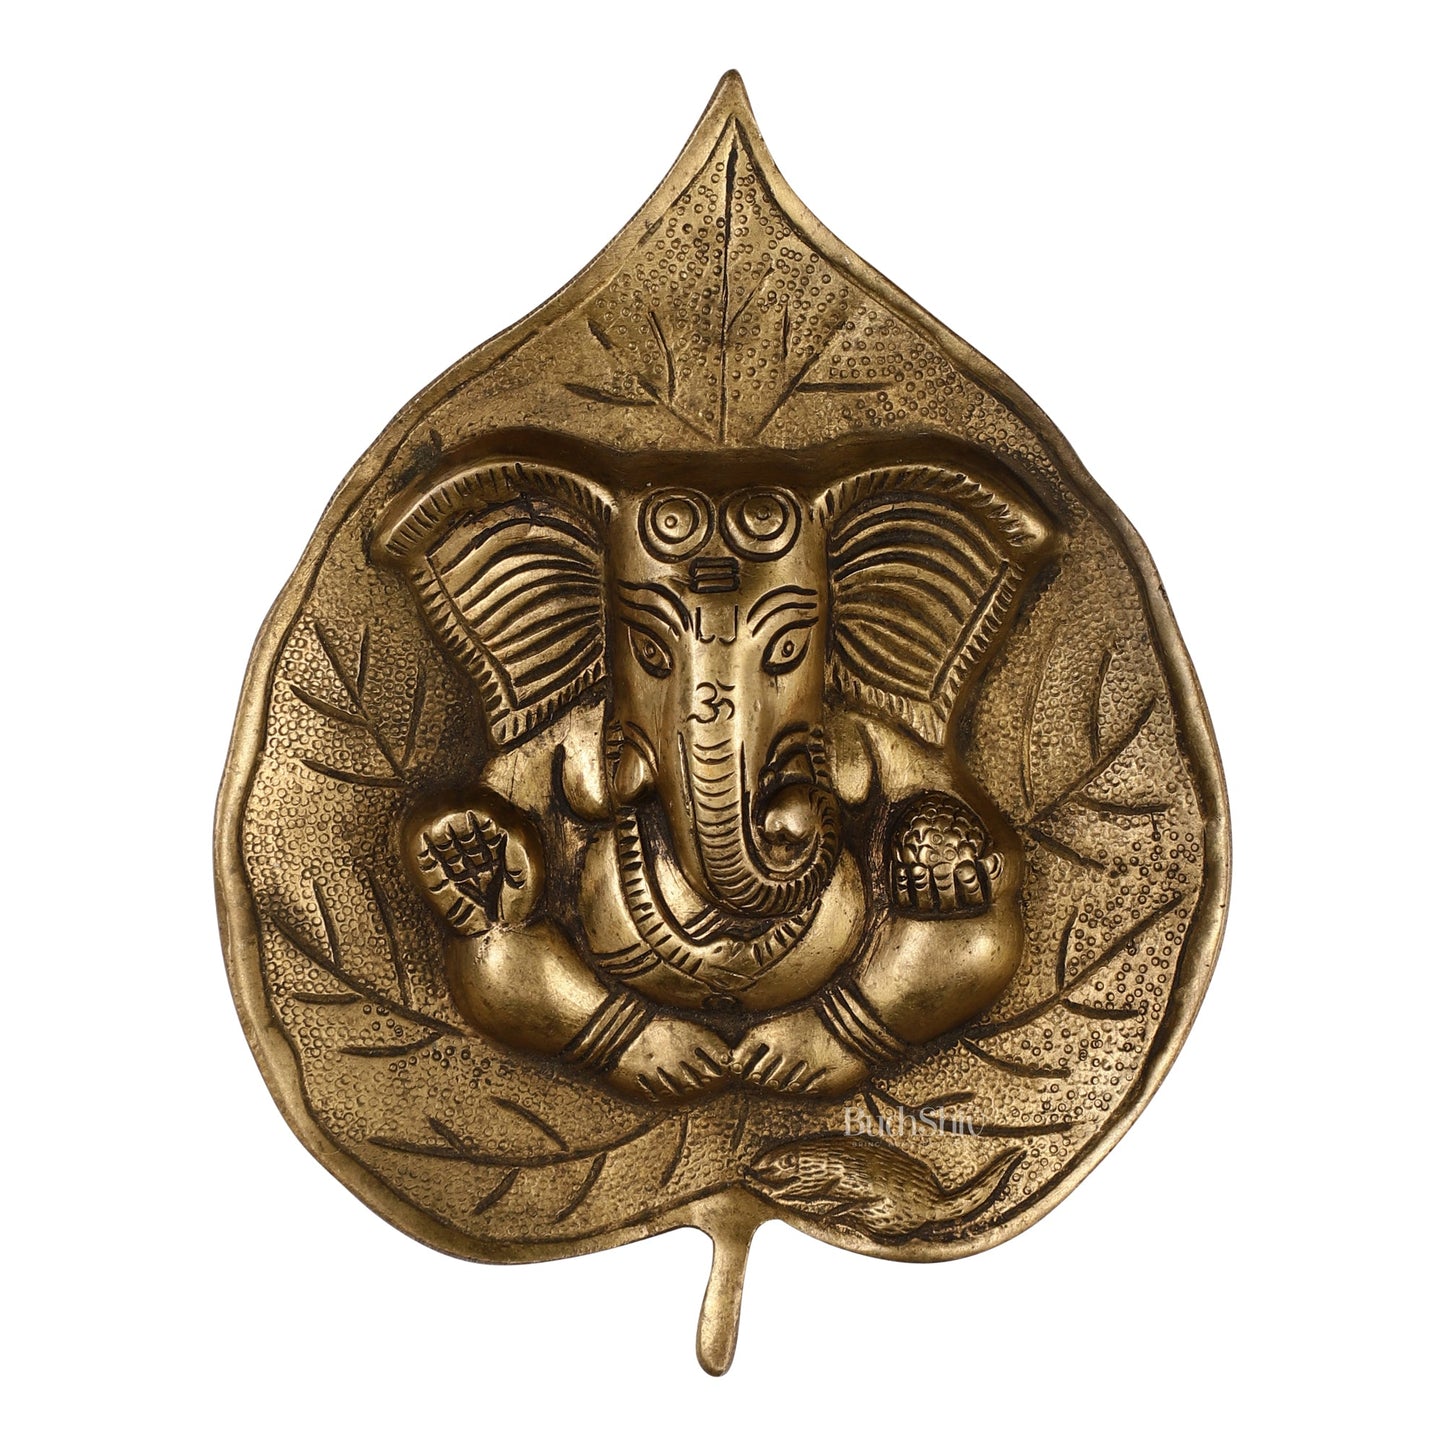 Brass Ganesha on Leaf Wall Hanging - 7 inch - Budhshiv.com